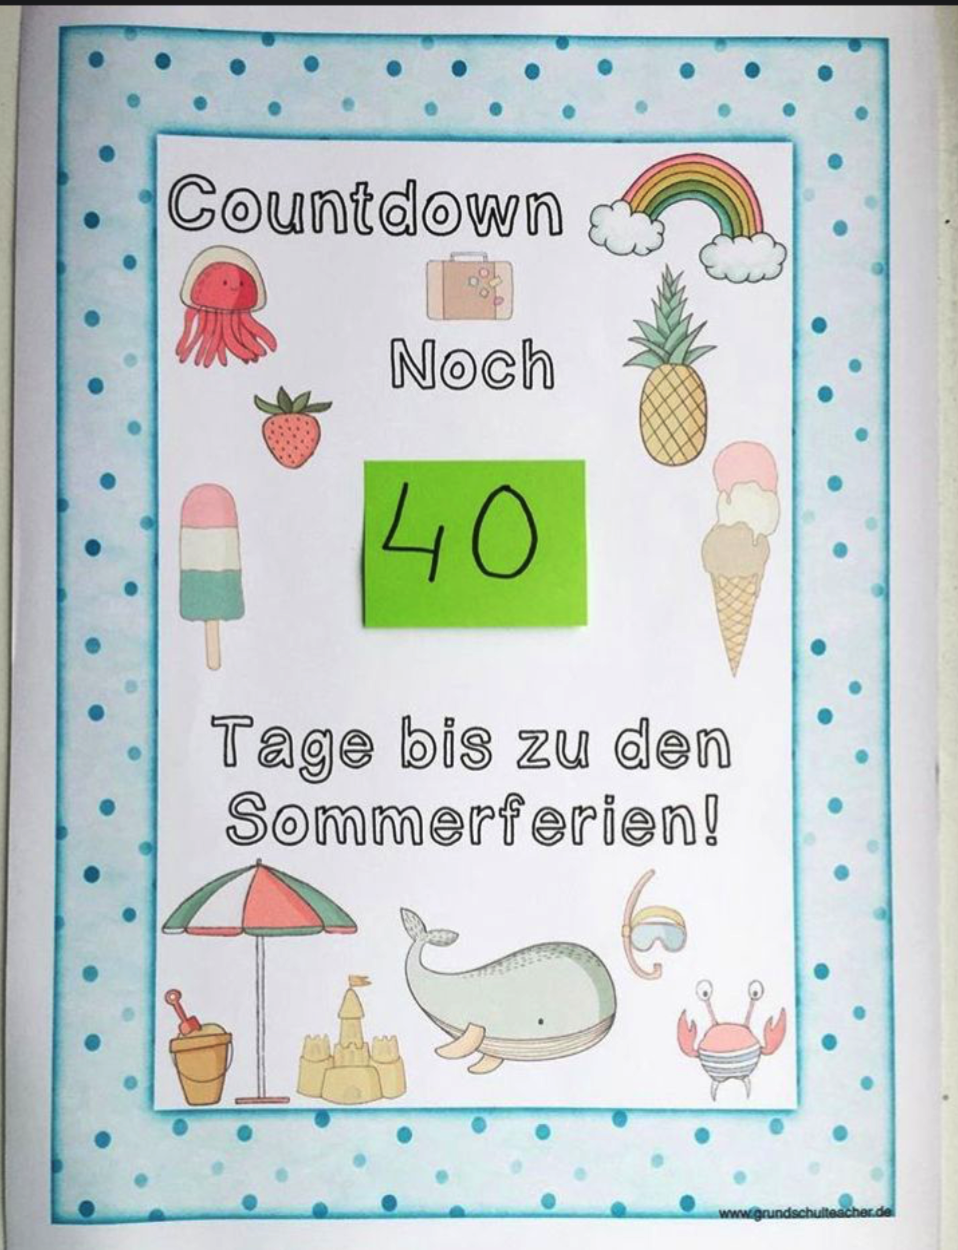 Countdown Sommerferien